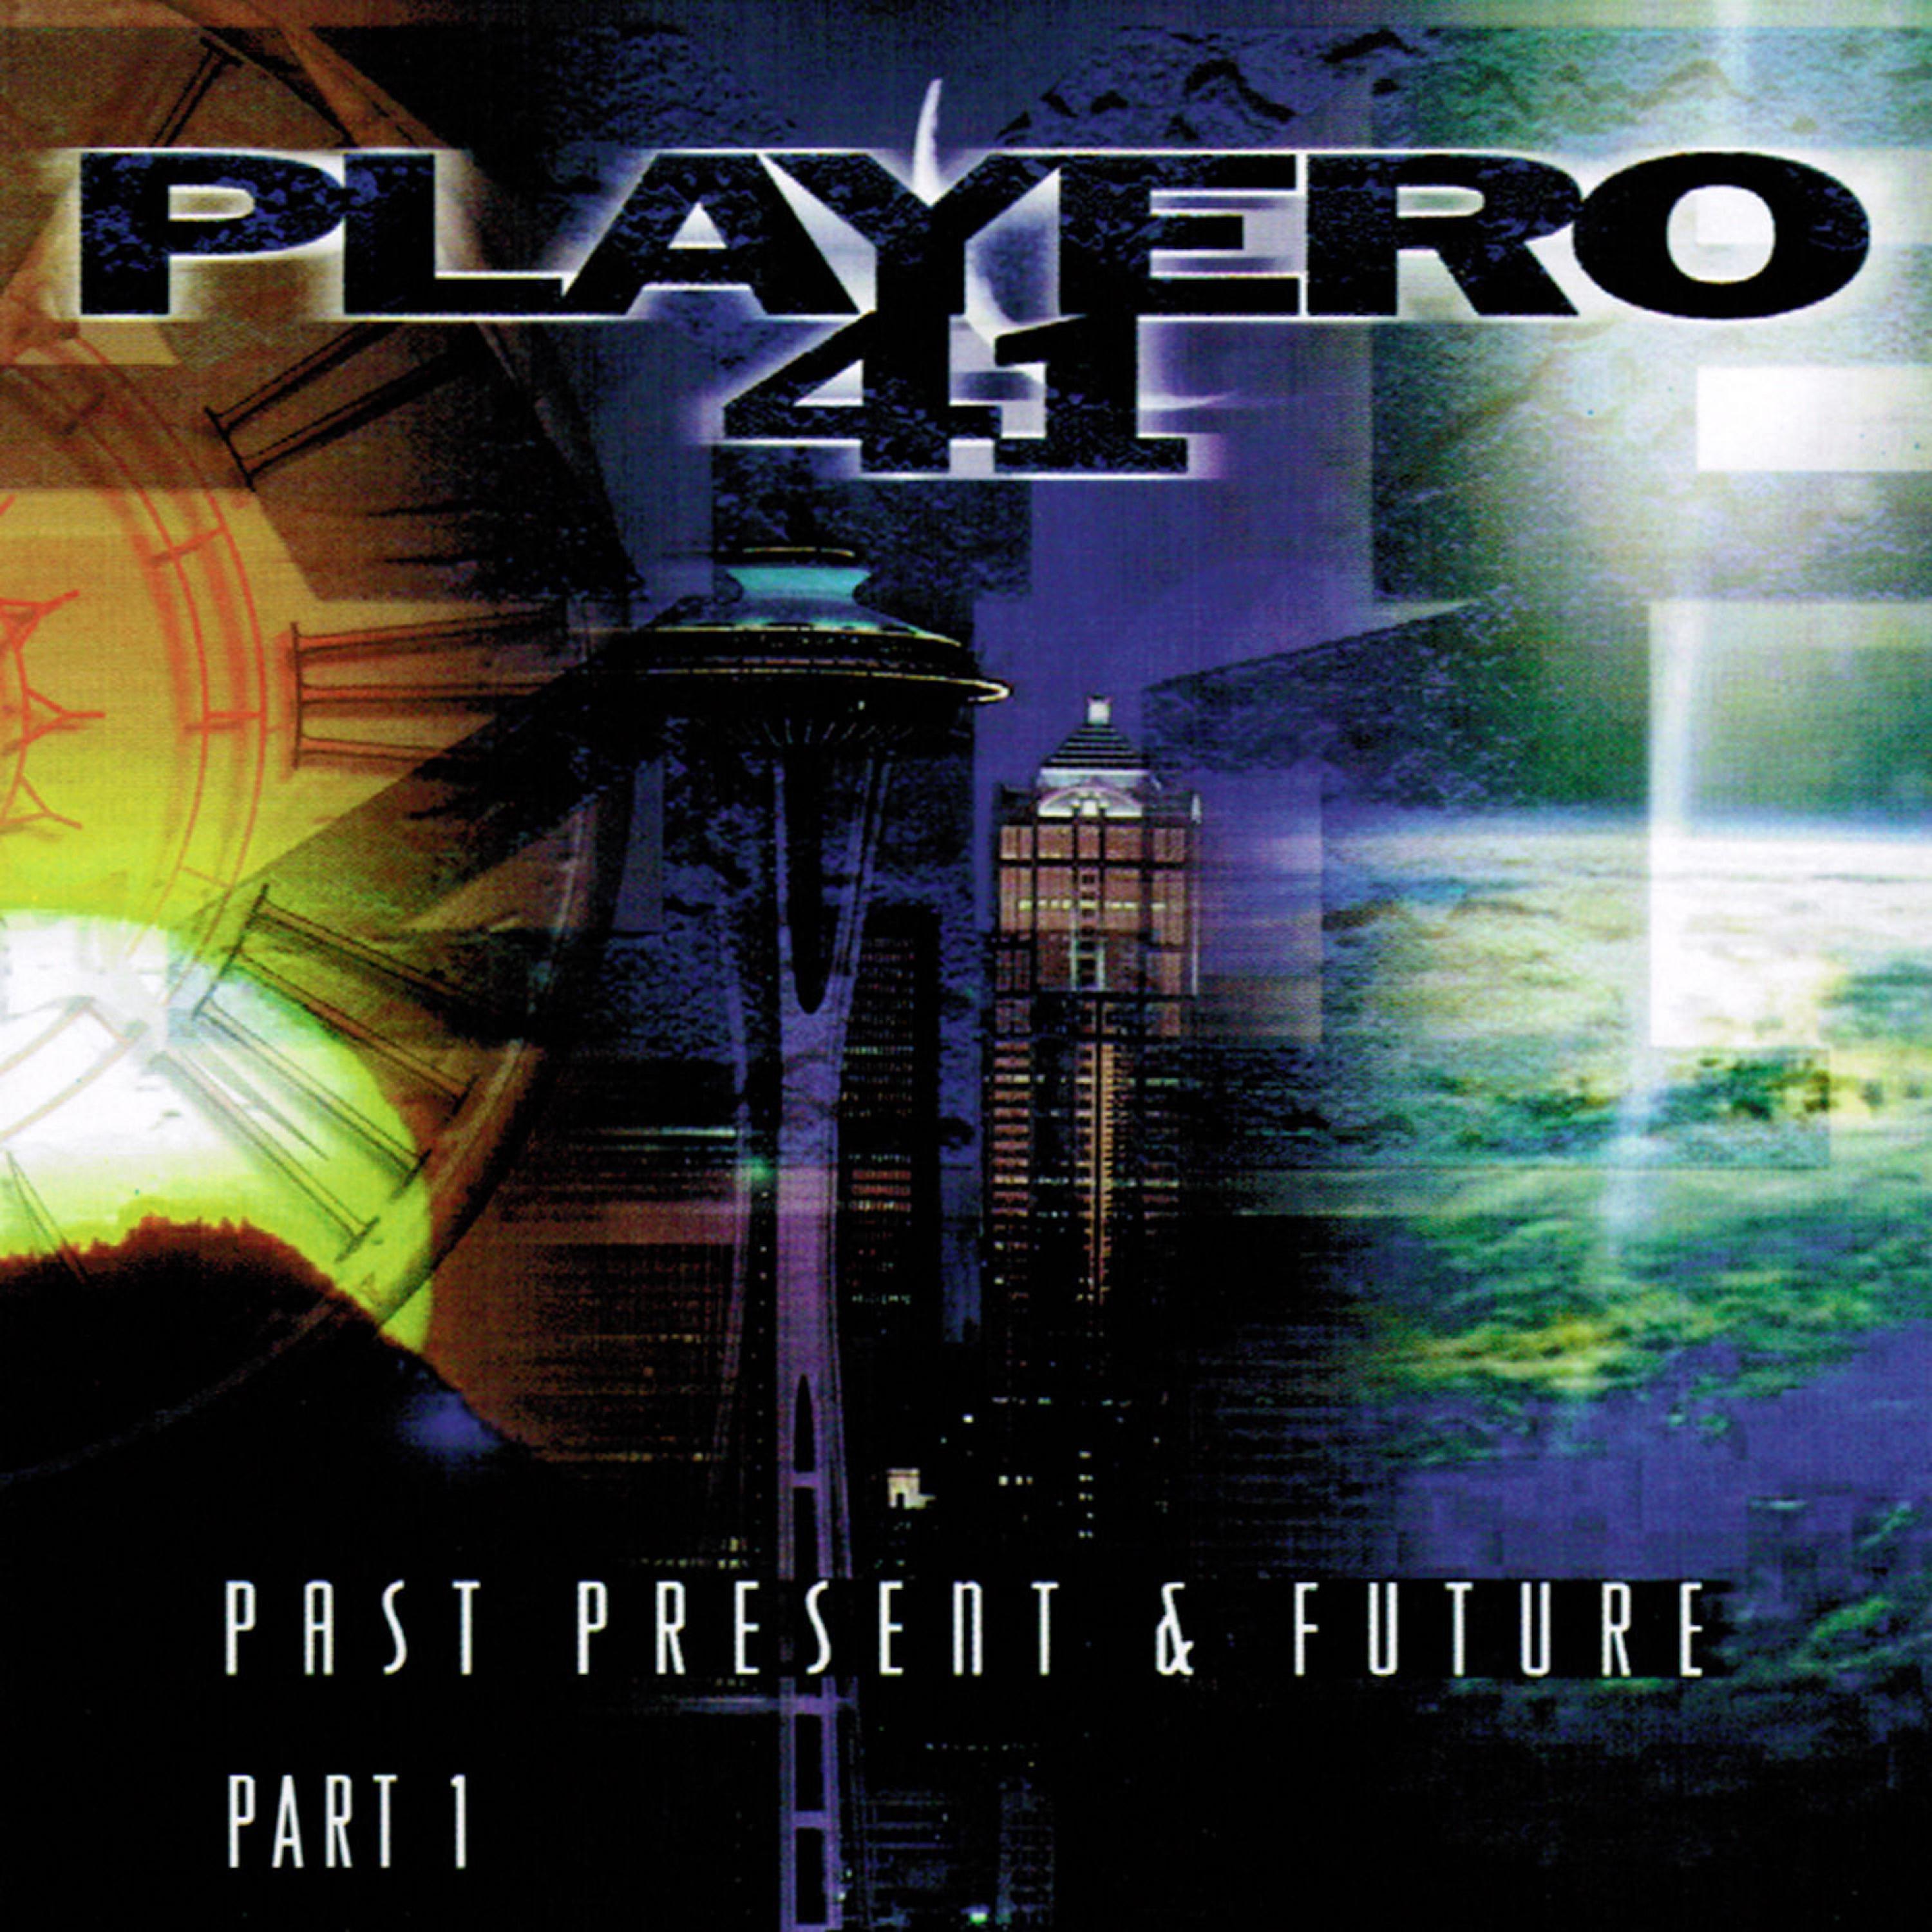 Playero 41: Past Present & Future, Pt 1